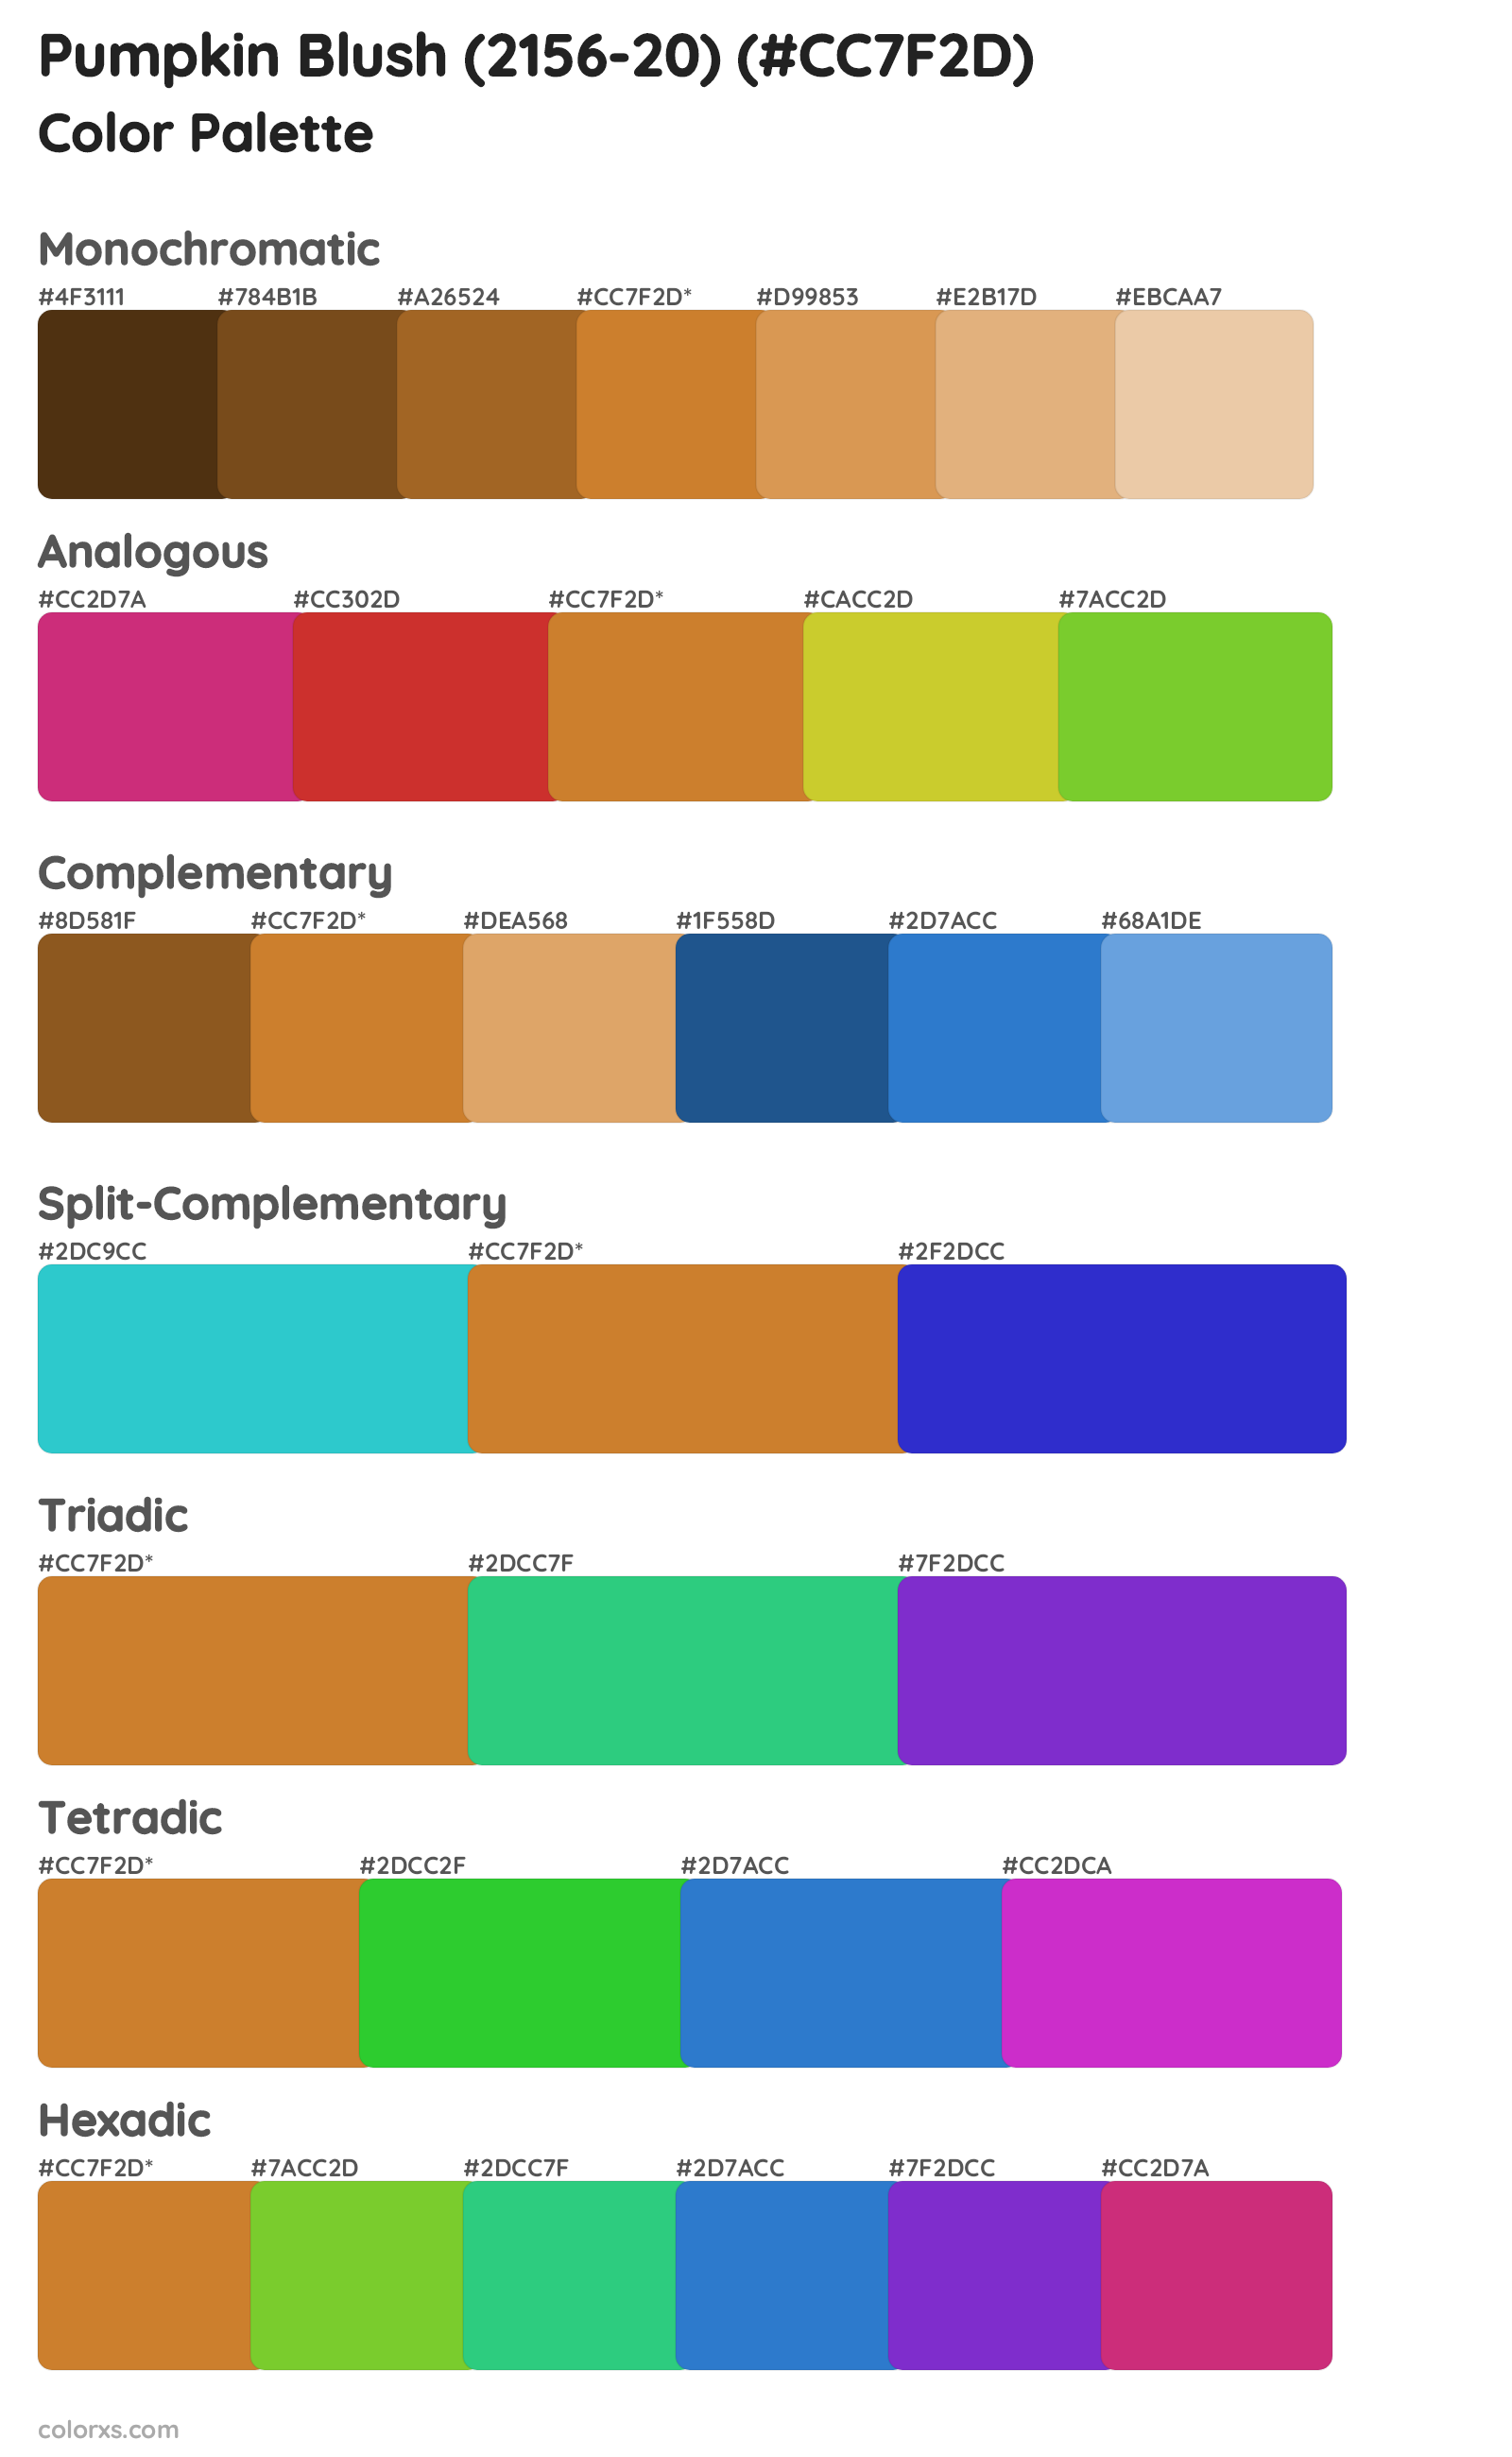 Pumpkin Blush (2156-20) Color Scheme Palettes